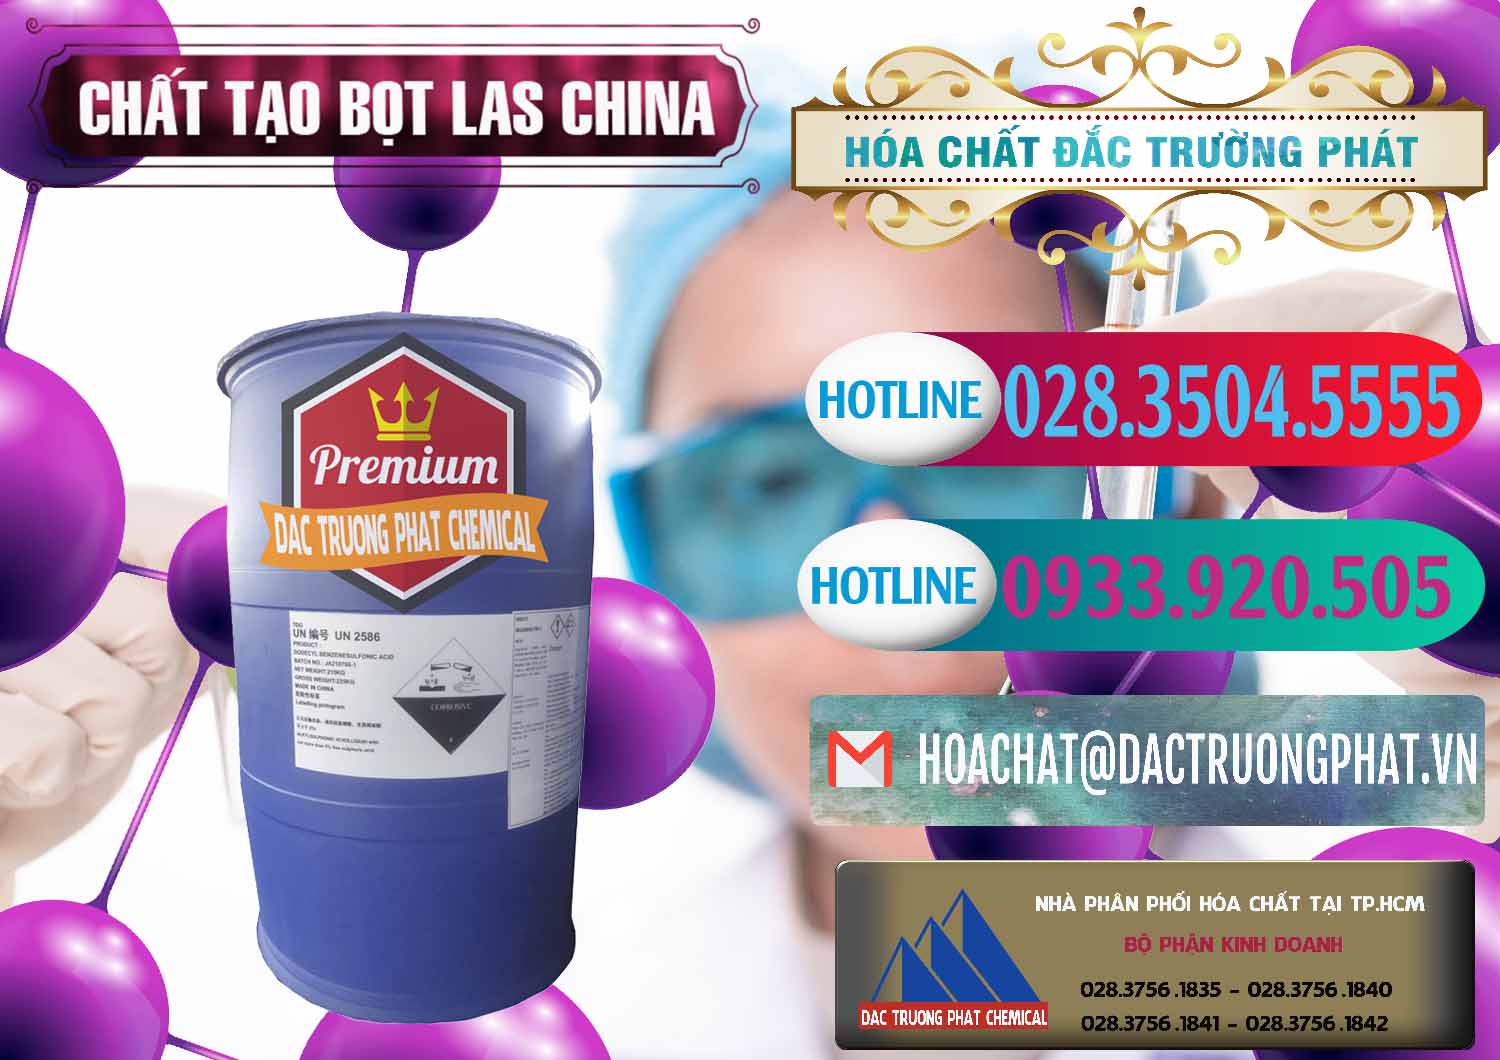 Nhà nhập khẩu - bán Chất tạo bọt Las Trung Quốc China - 0451 - Cty nhập khẩu _ phân phối hóa chất tại TP.HCM - truongphat.vn